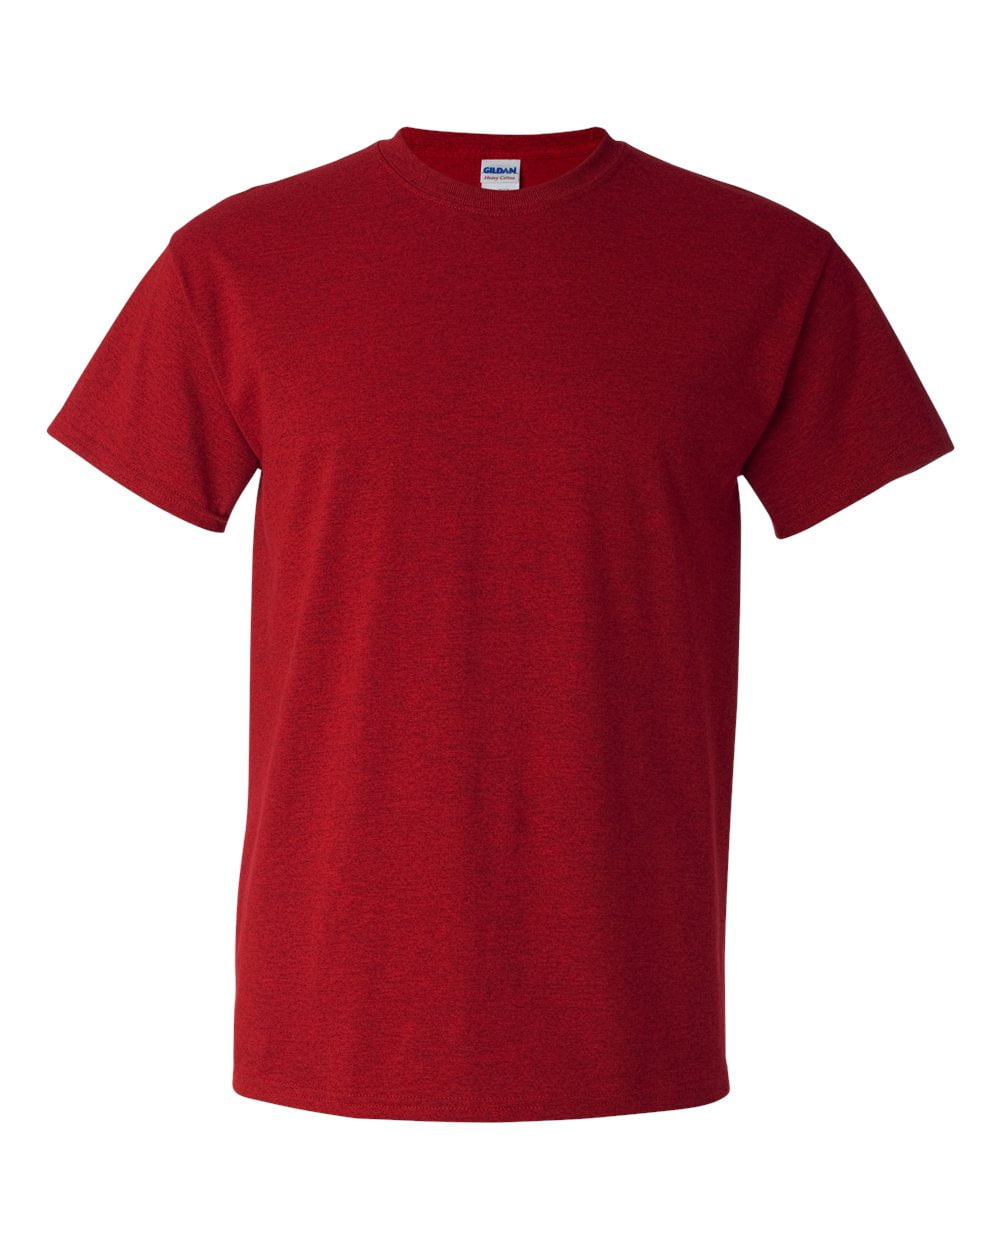 Gildan 5000 Heavy Cotton Men's T-Shirt - Antique Cherry Red - 5X-Large ...